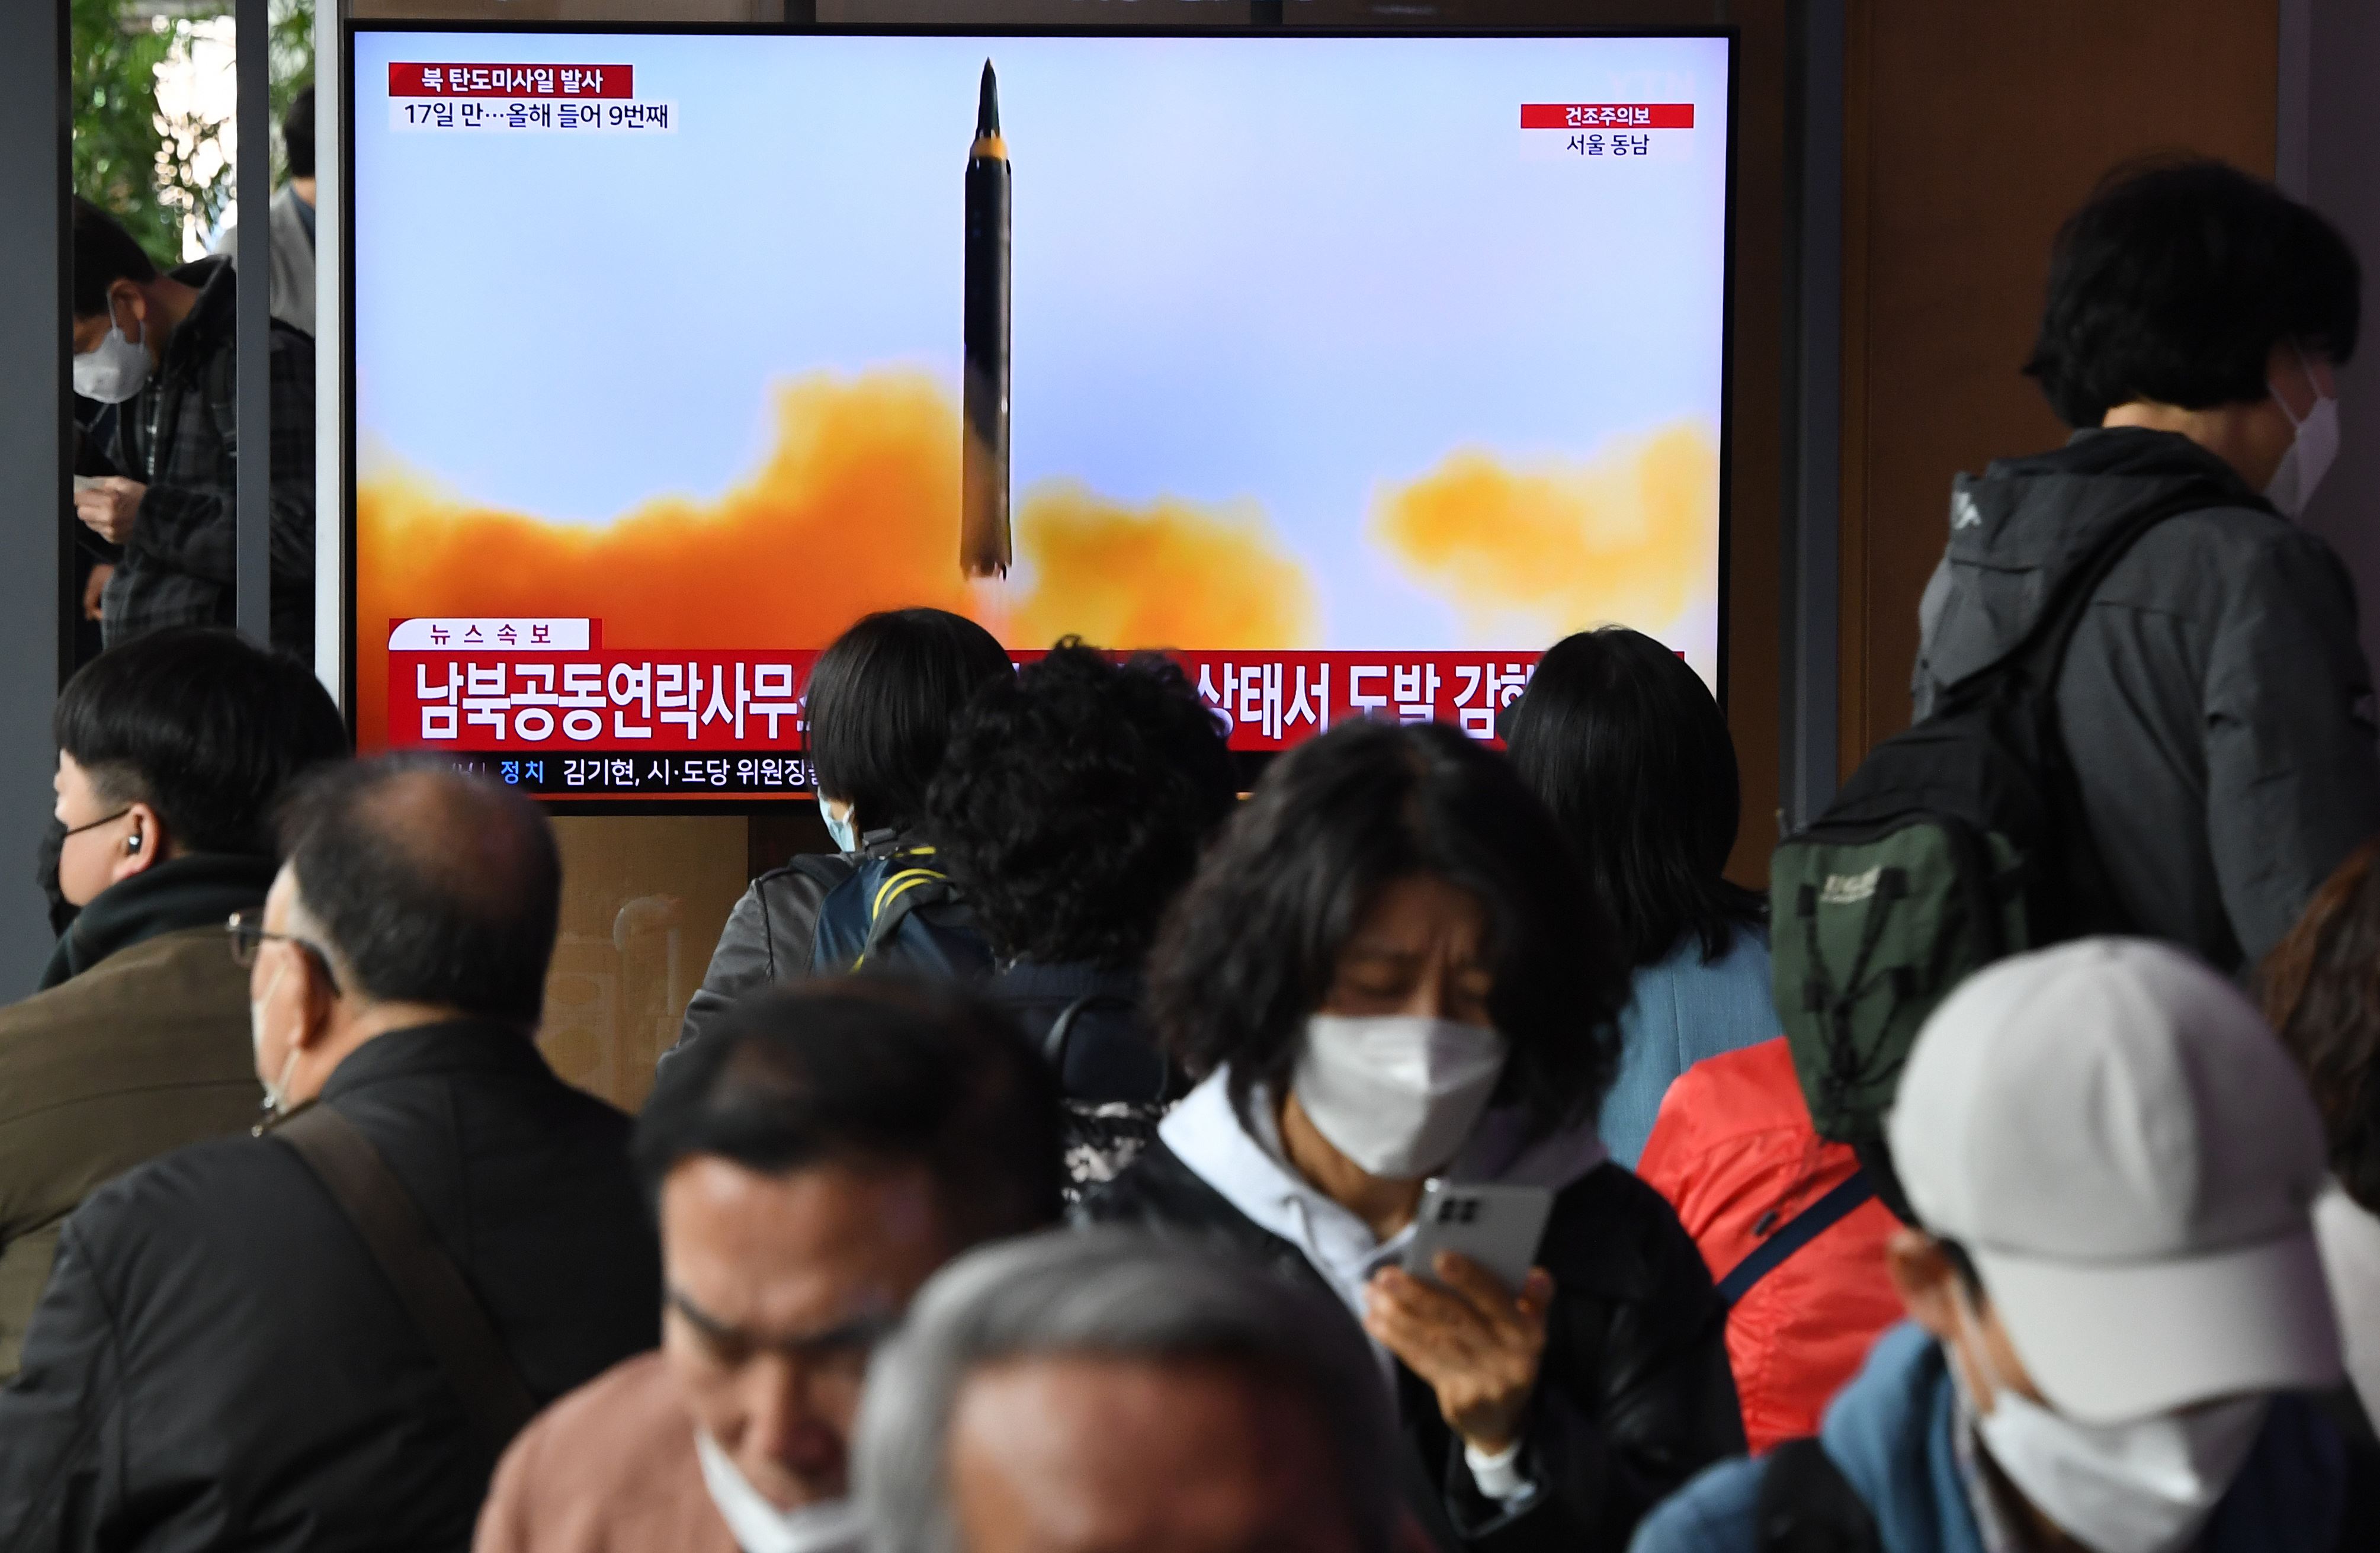 جديد كوريا الشمالية.. صاروخ بالستي "من نوع آخر"